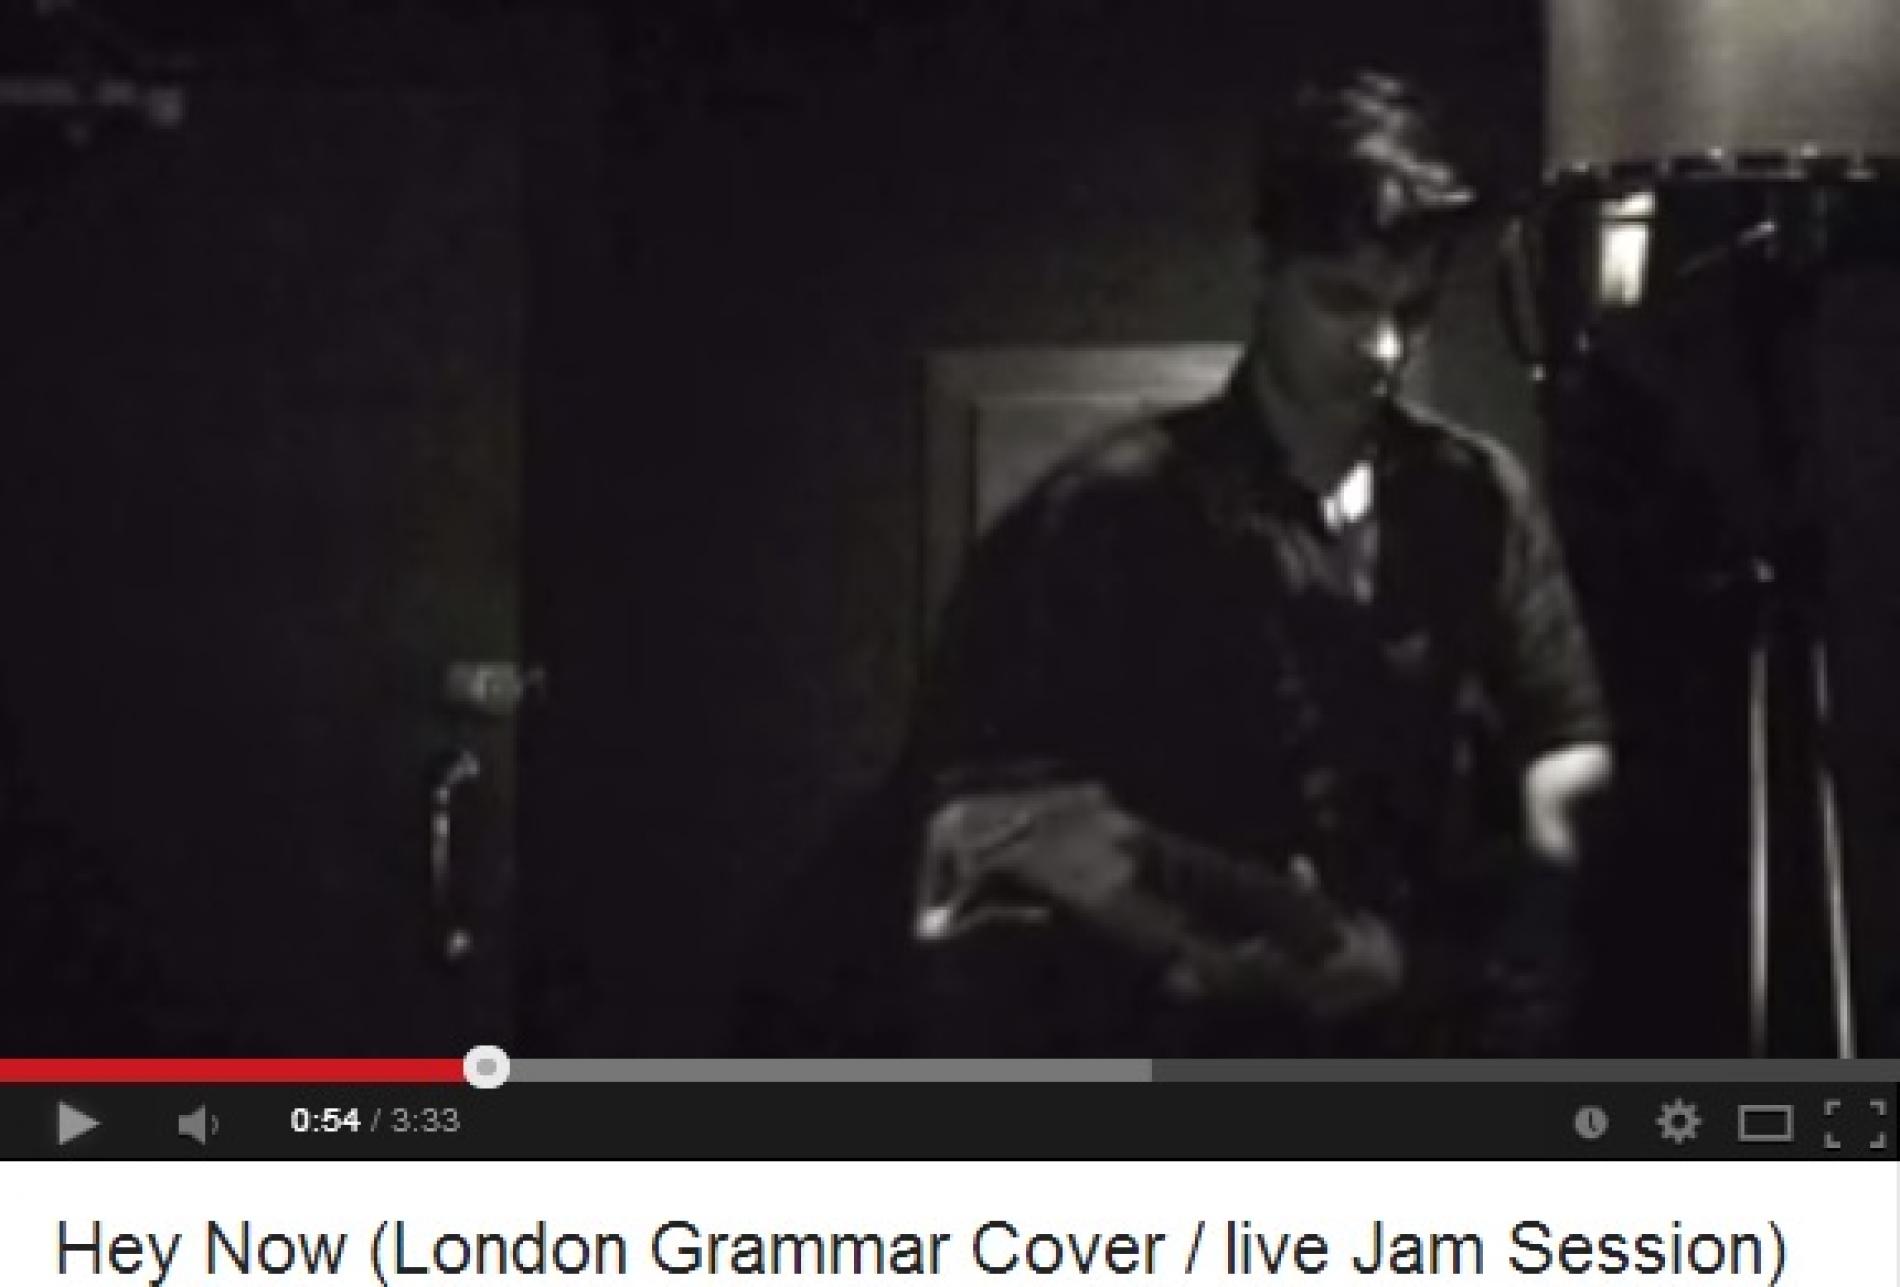 Sheaam Deen: Hey Now (London Grammar Cover)